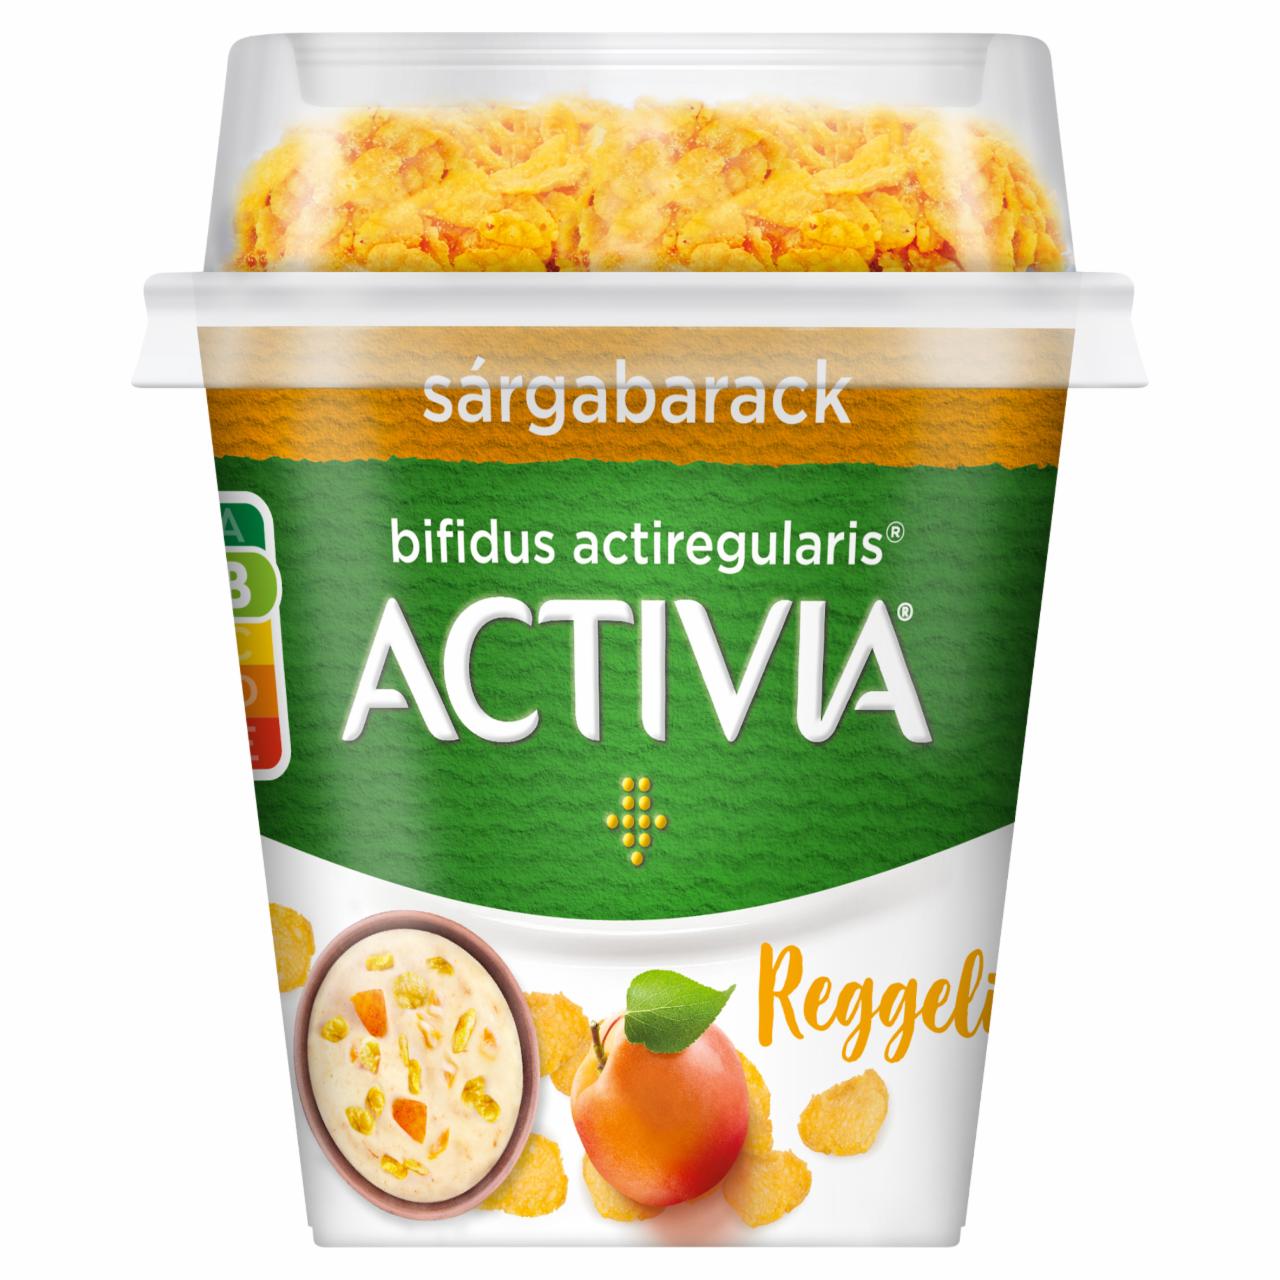 Képek - Danone Activia Reggeli élőflórás sárgabarack joghurt kukoricapehellyel 165 g 